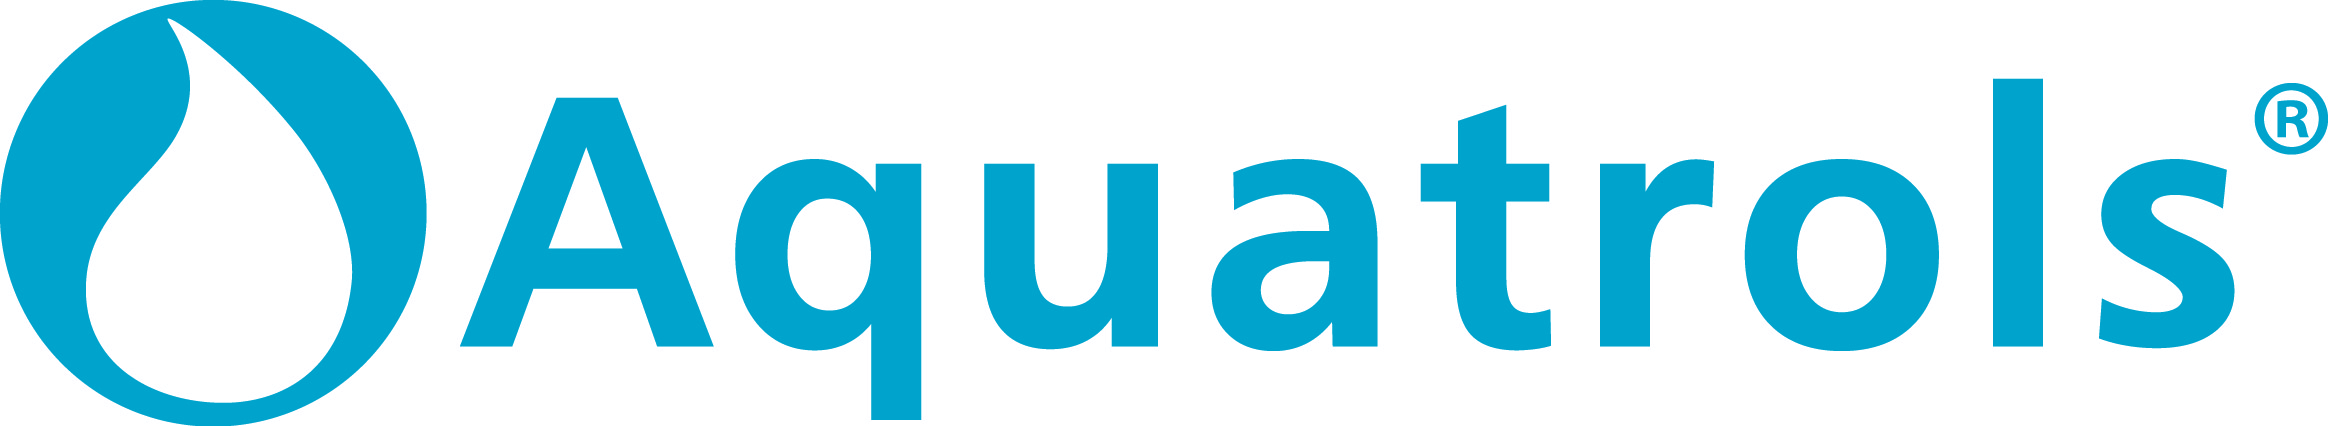 Logos/Aquatrols logo